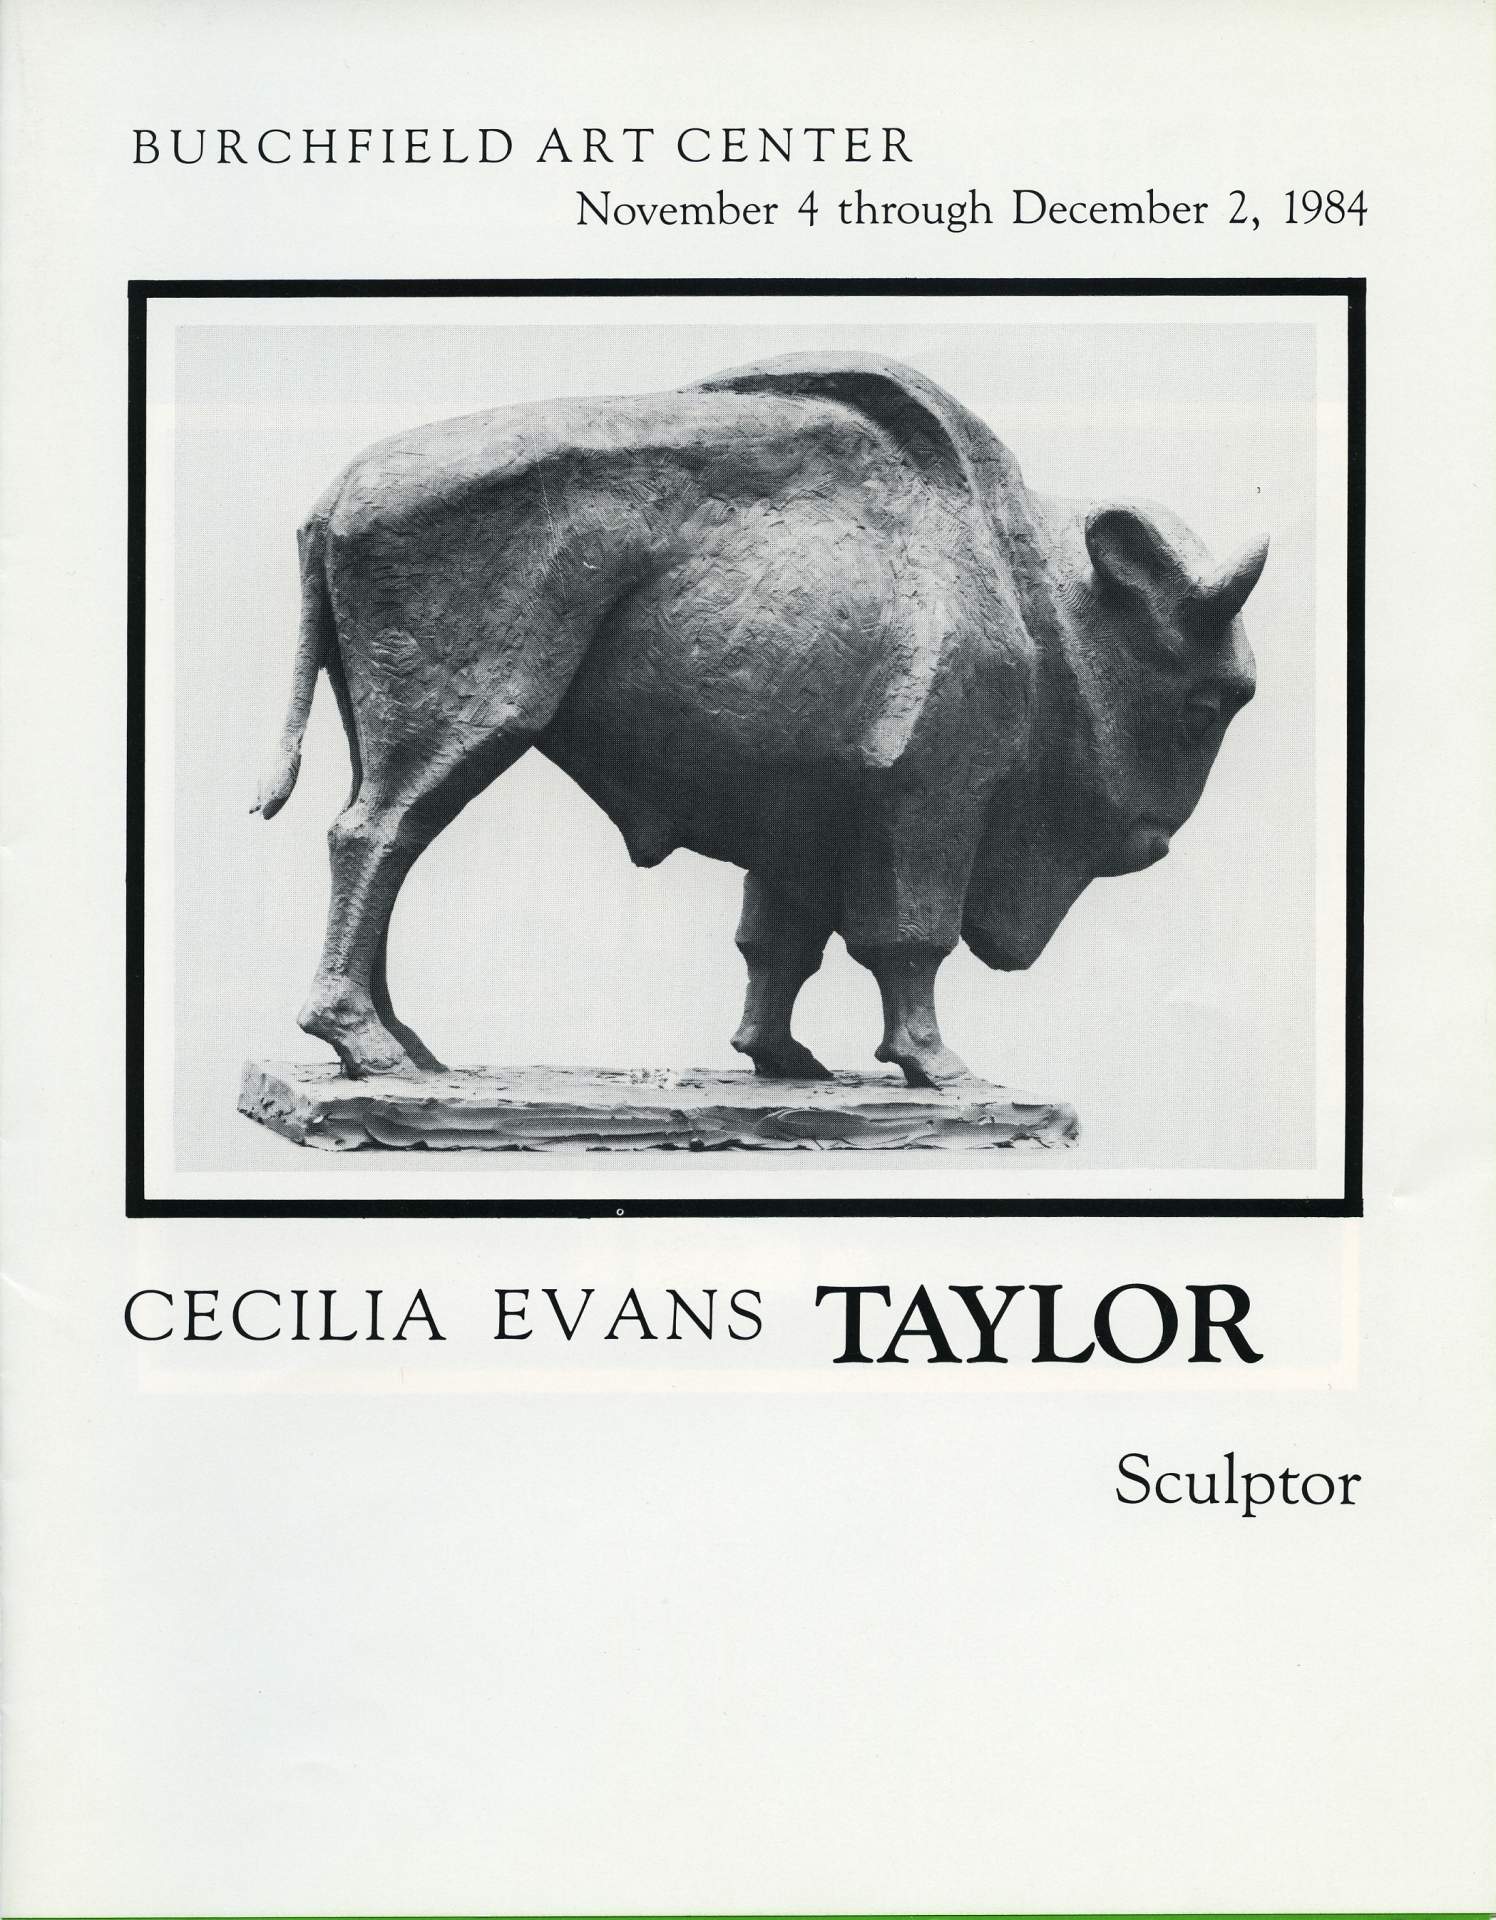 Cecilia Evans Taylor, Sculptor exhibition program cover